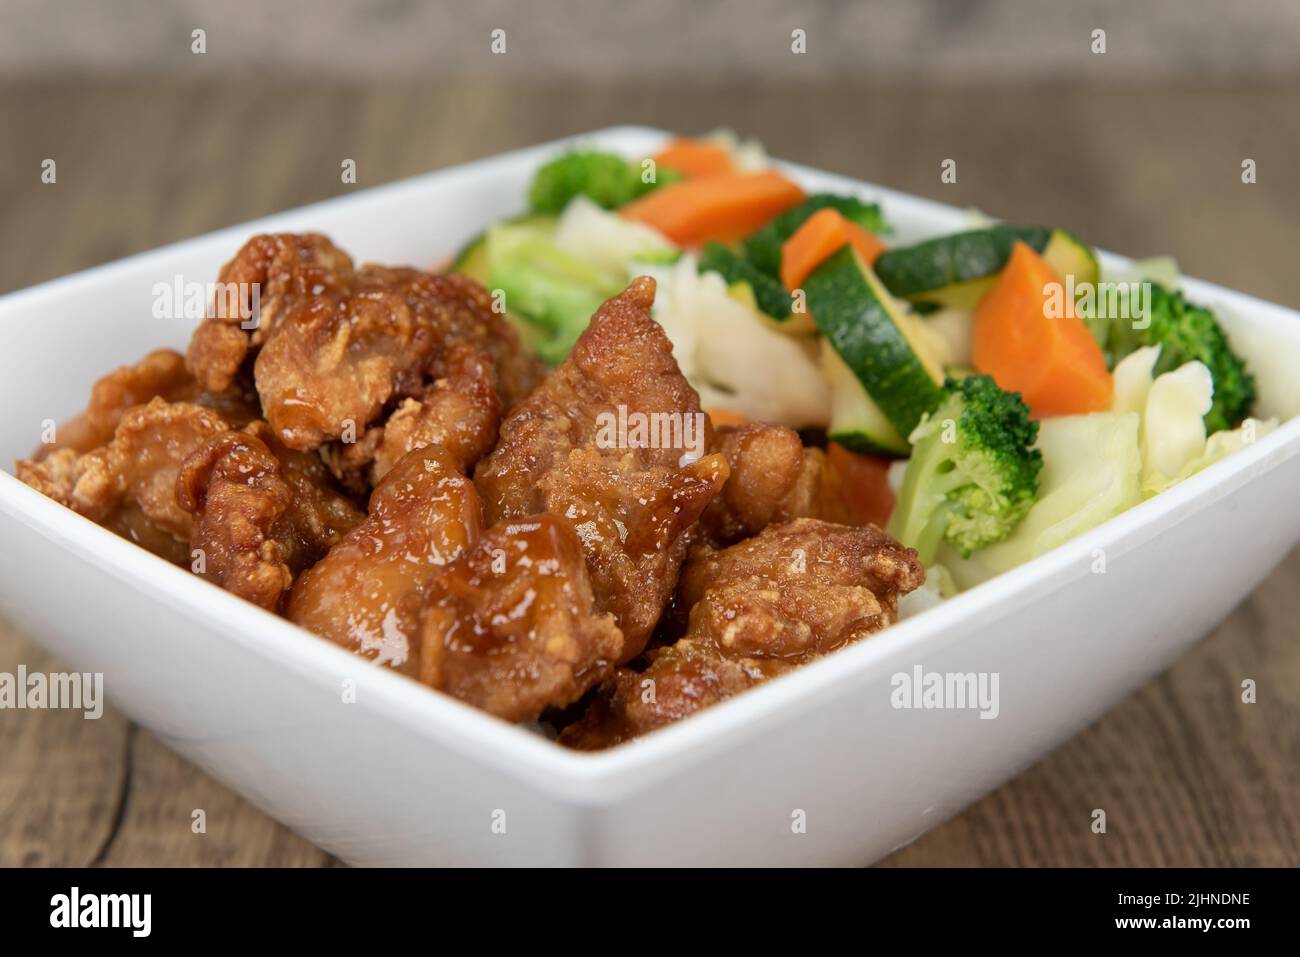 La comida de la cocina china tentadora que consiste en pollo anaranjado sobre arroz con verduras asegurará que el vientre estará lleno. Foto de stock